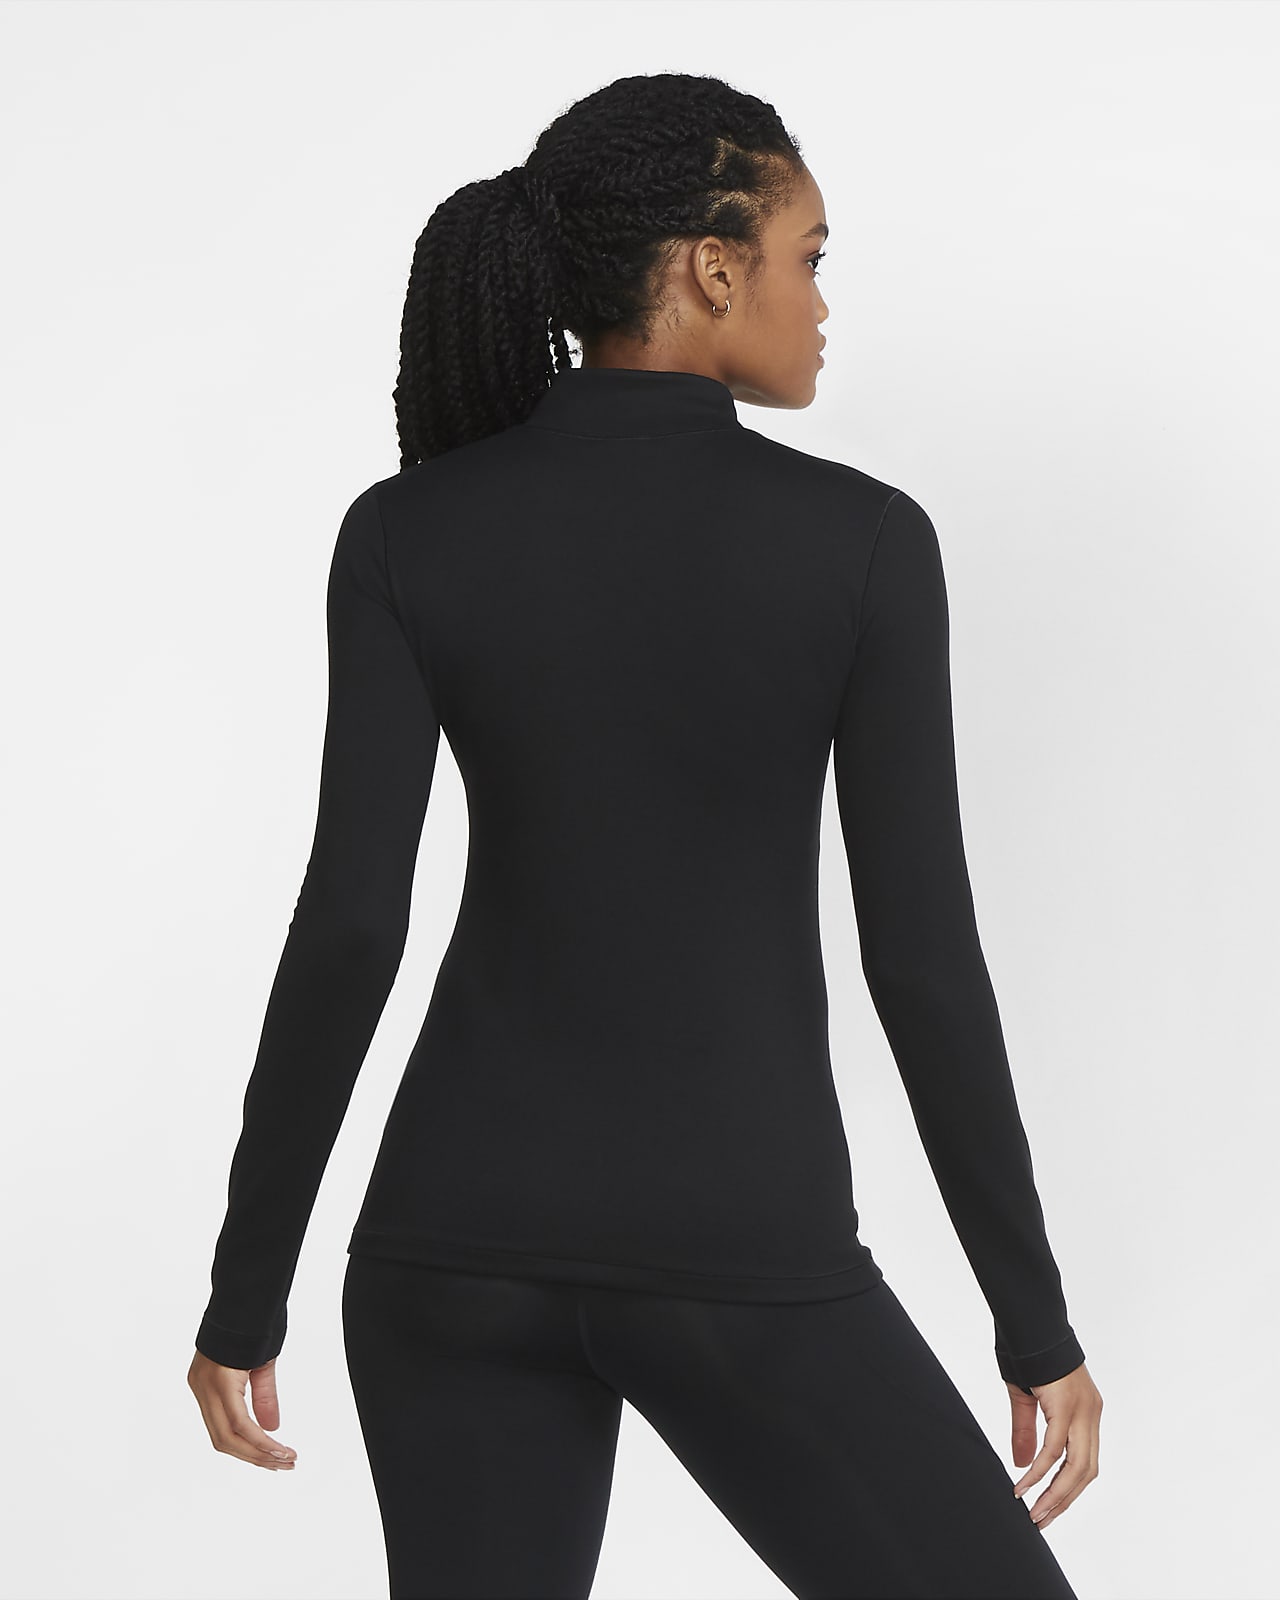 Terminal unlock Fellow Nike Pro Warm Women's Long-Sleeve 1/2-Zip Top. Nike.com